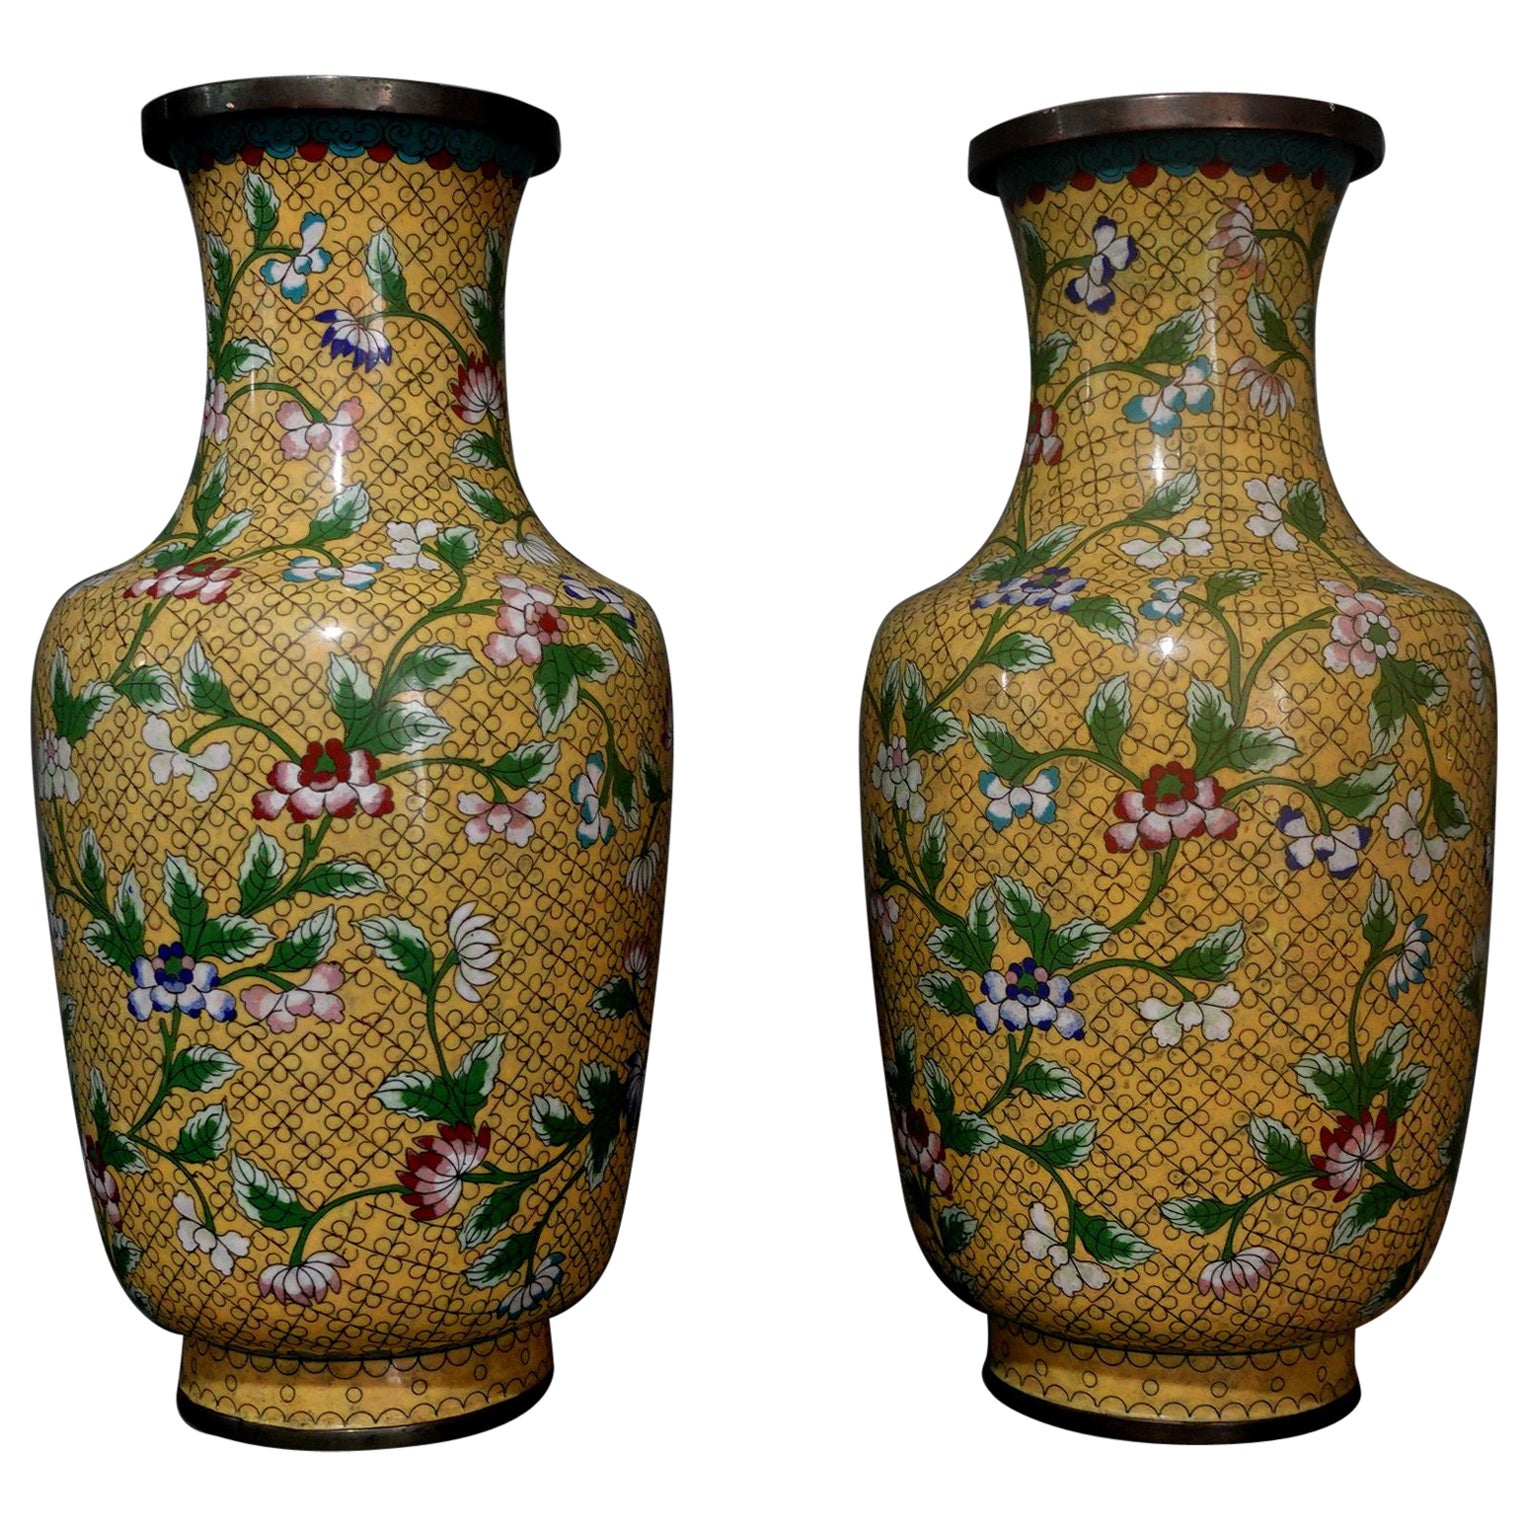 Großes Paar chinesischer Vasen mit Cloisonné-Emaille aus Bronze